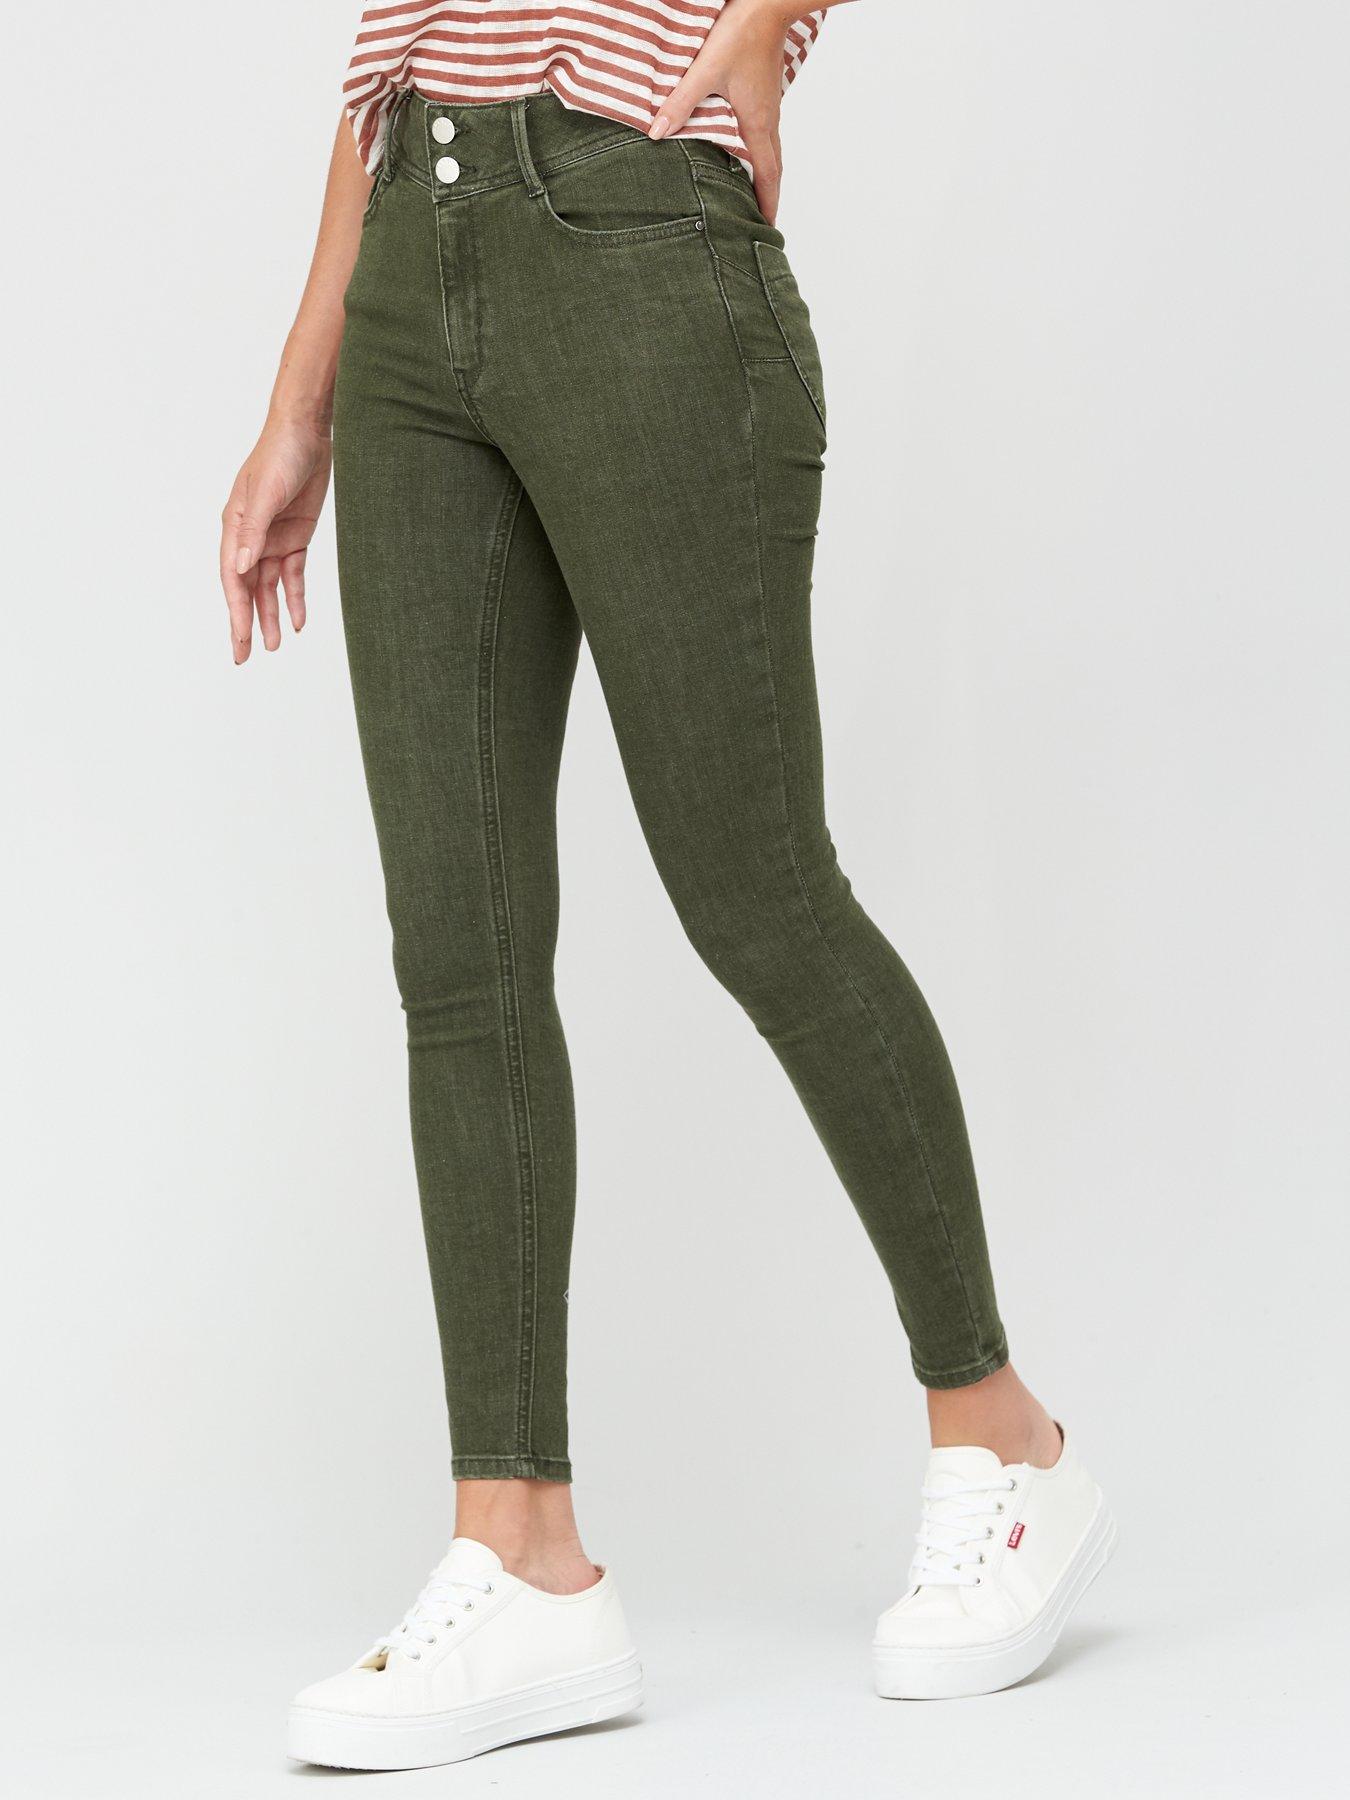 green skinny jeans ladies